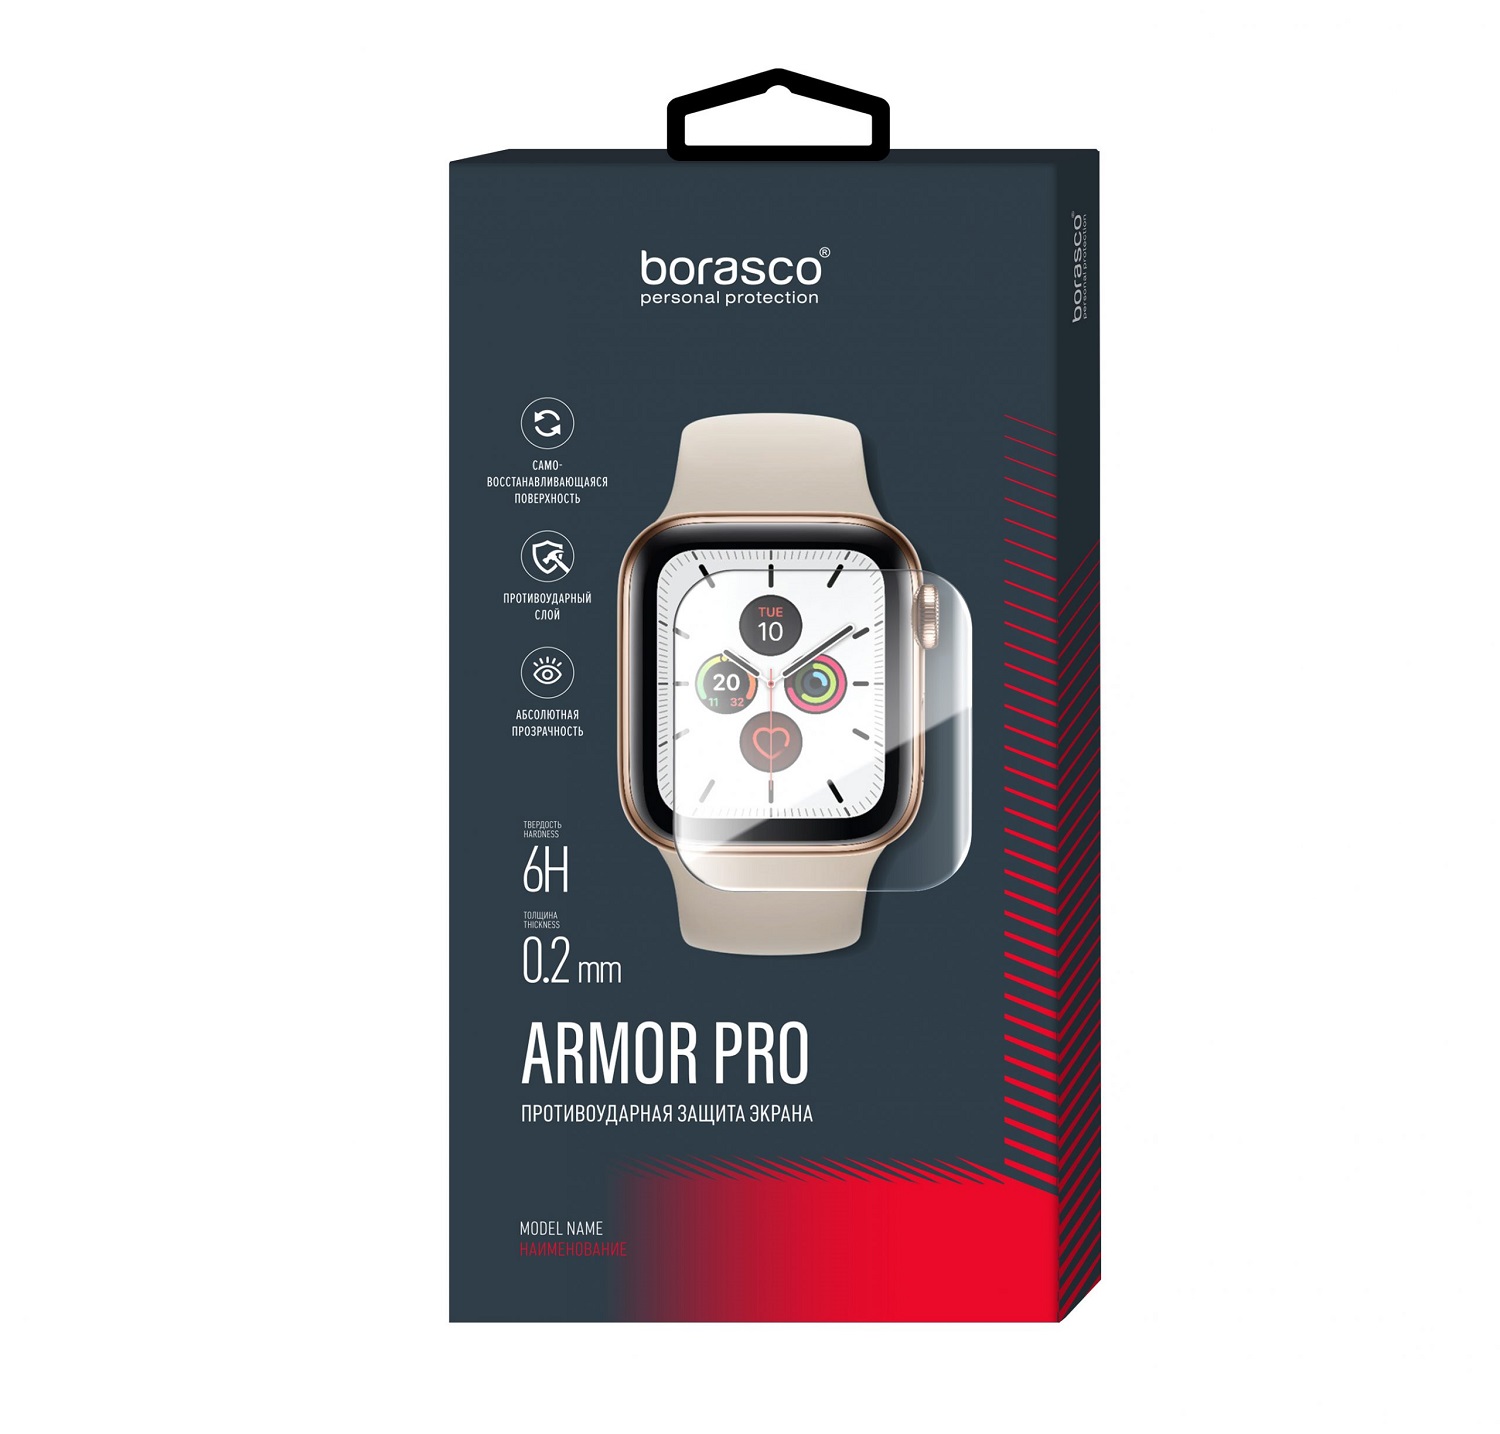 Защита экрана BoraSCO Armor Pro для Xiaomi Mi Watch защита экрана borasco armor pro для huawei watch fit